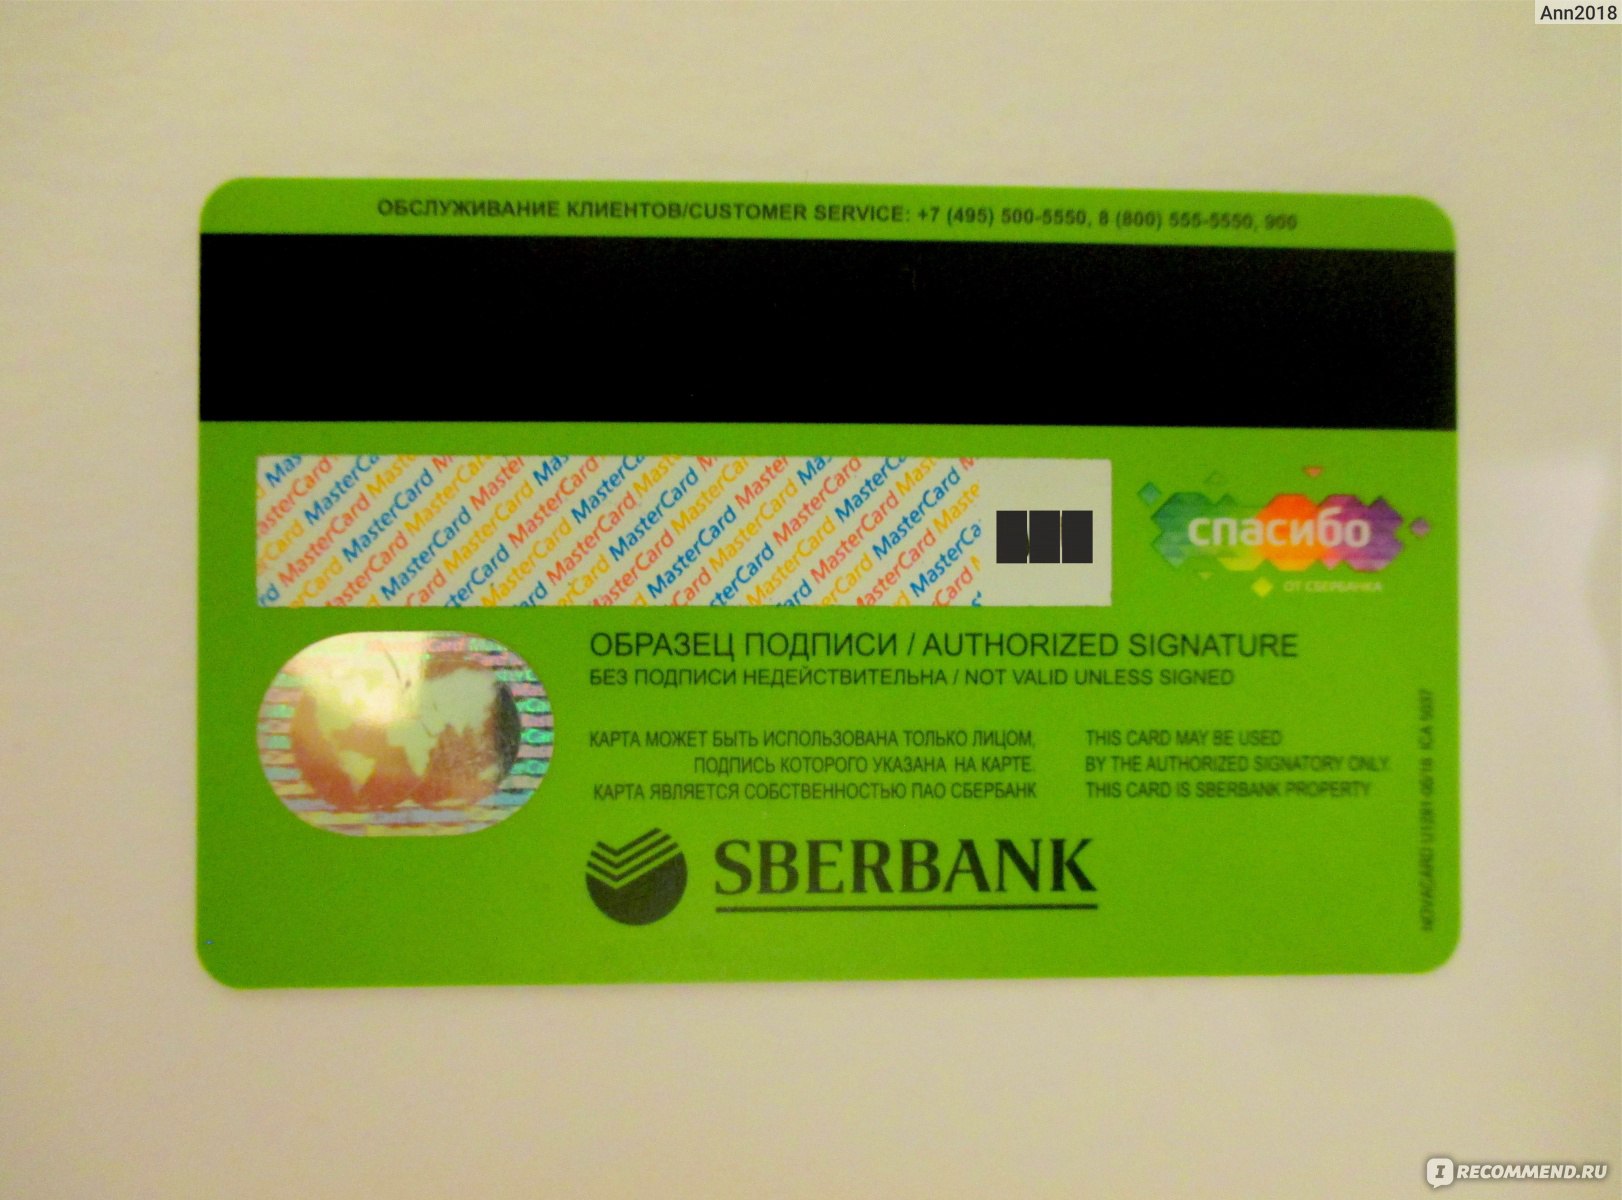 Фото банковских карт с двух сторон фото